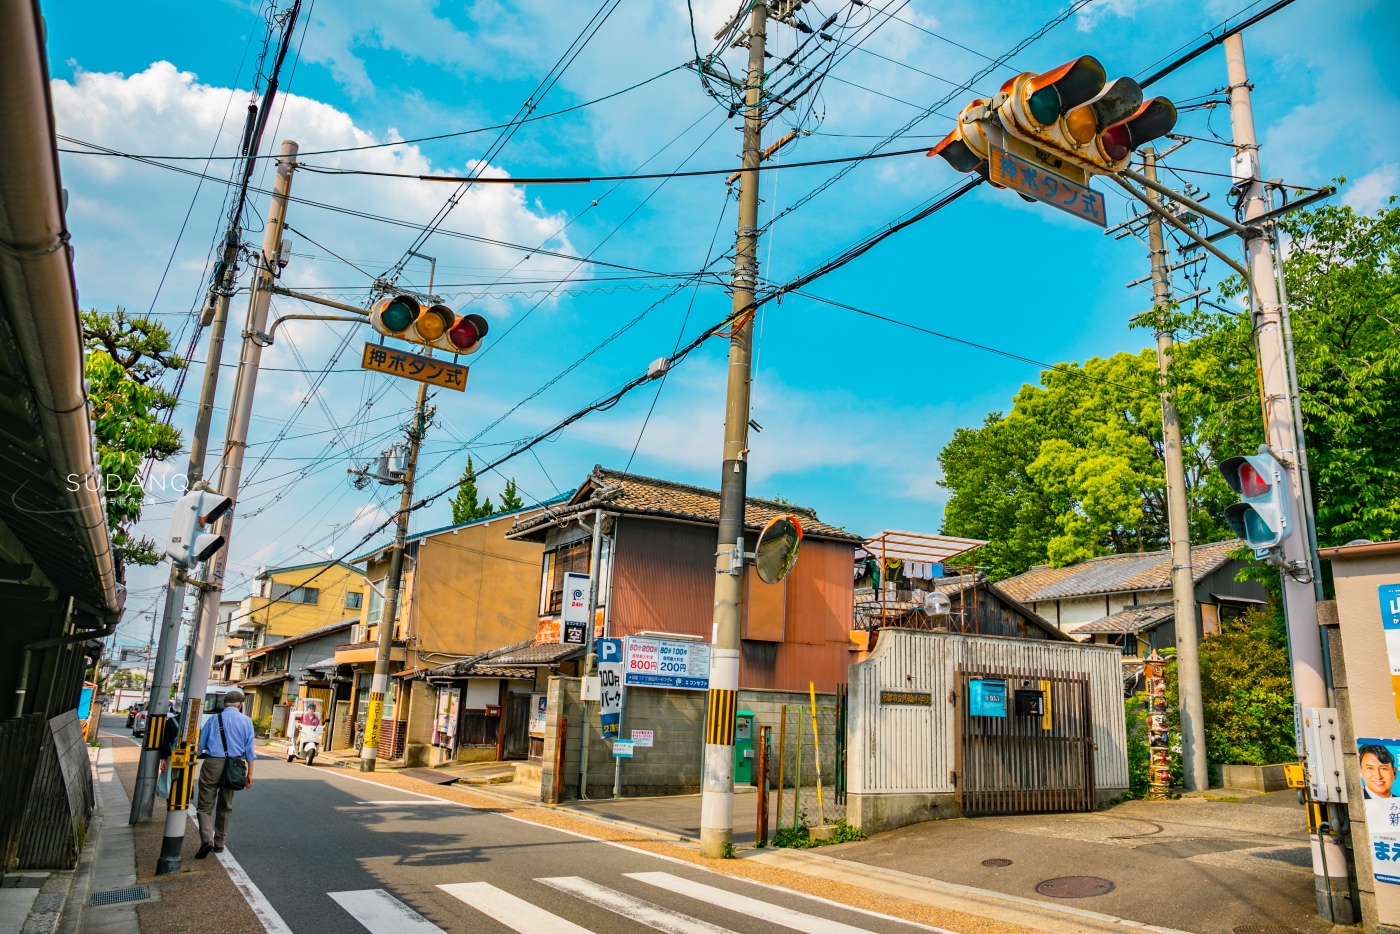 日本经济发达,为何街头都是电线杆?中国游客: